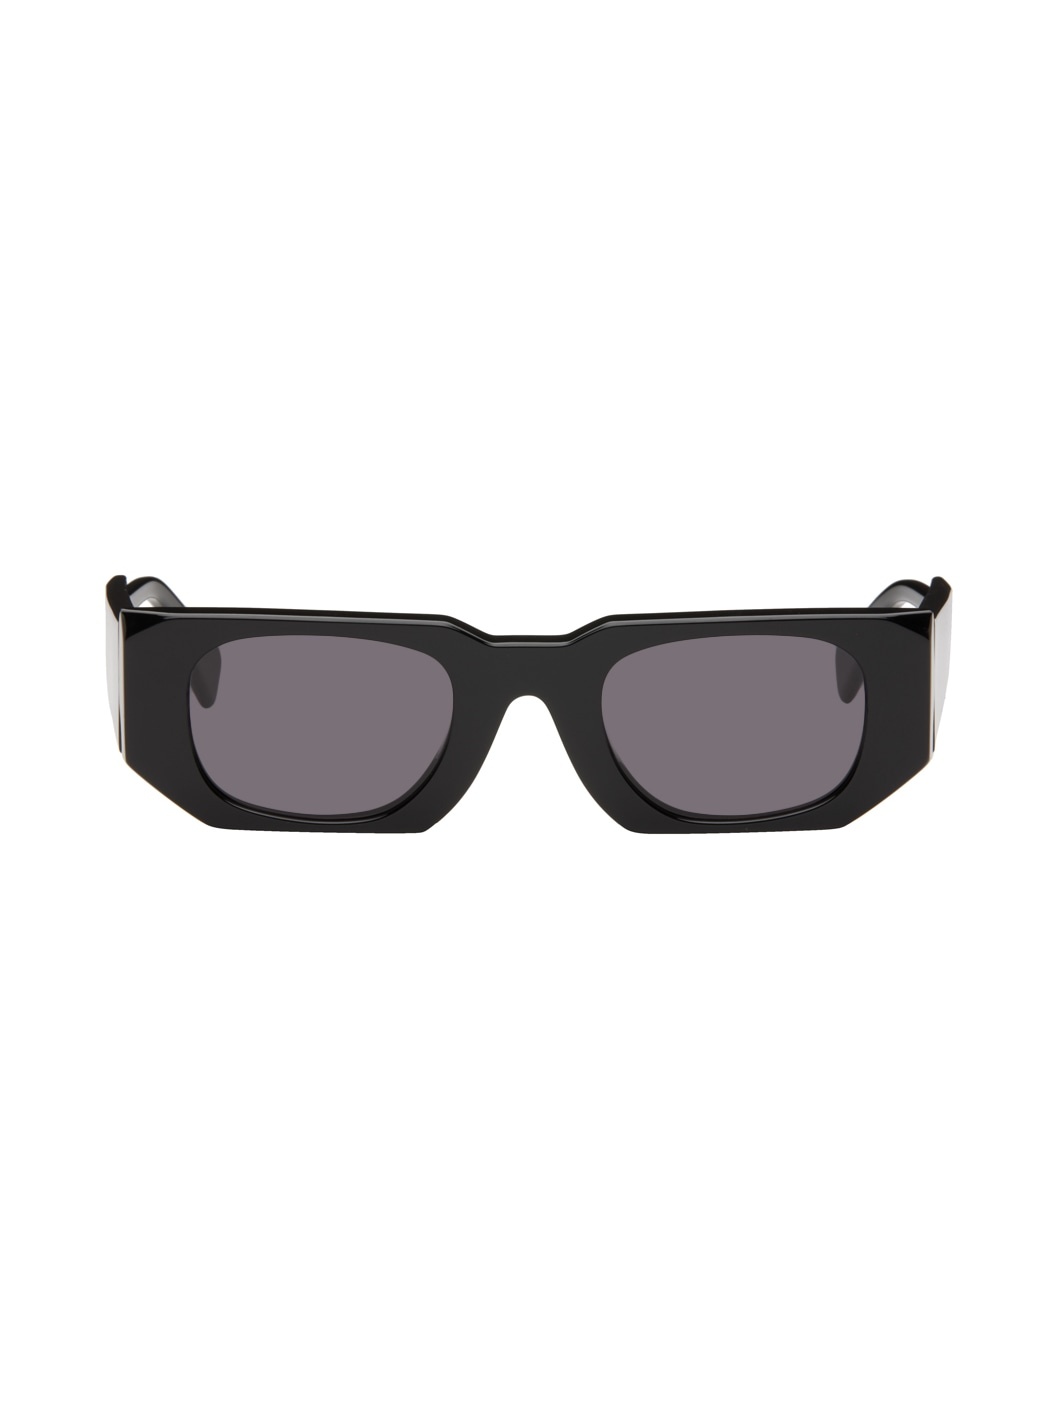 Black U8 Sunglasses - 1